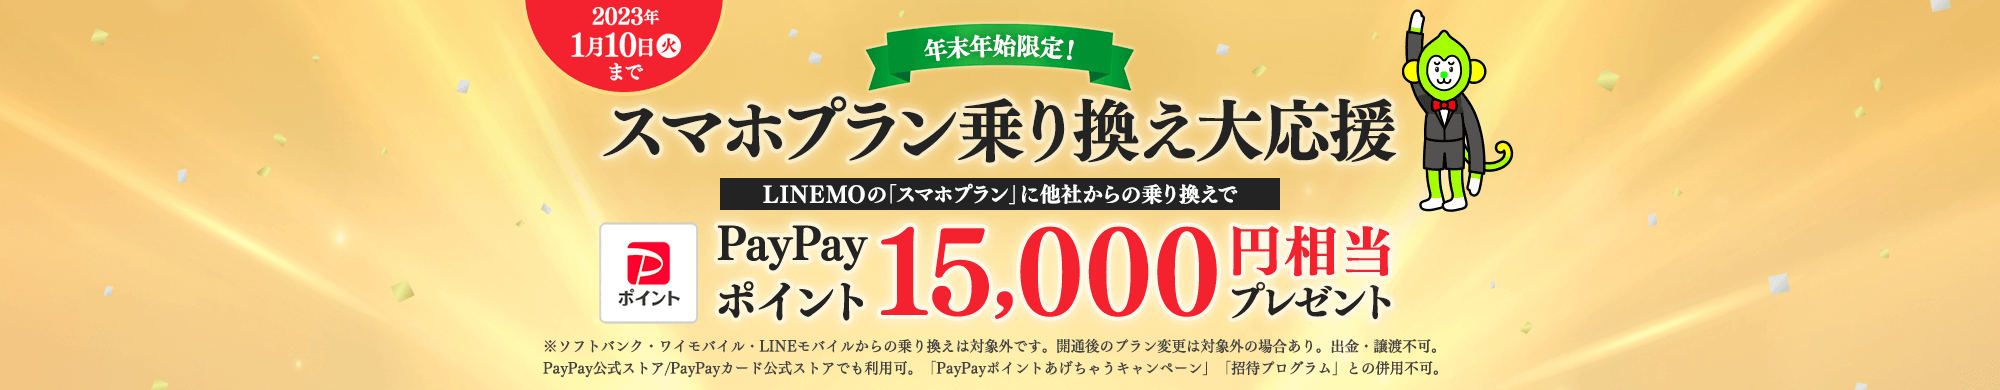 キャンペーン期間中に、当ページを経由して、LINEMOの「スマホプラン」に他社からの乗り換えで契約すると、PayPayポイント15,000円相当をプレゼントします。